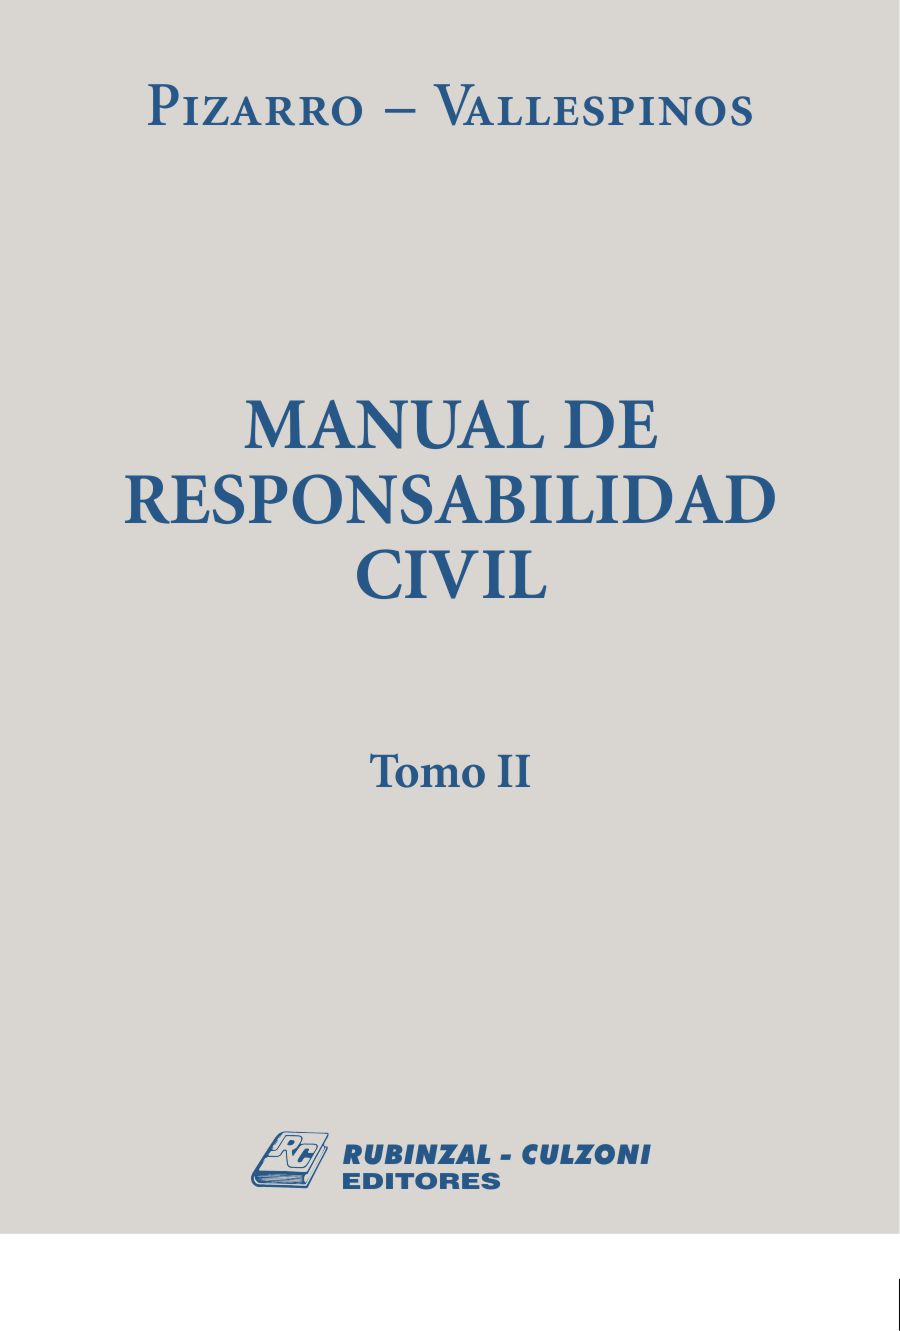 Manual de responsabilidad civil - Tomo II